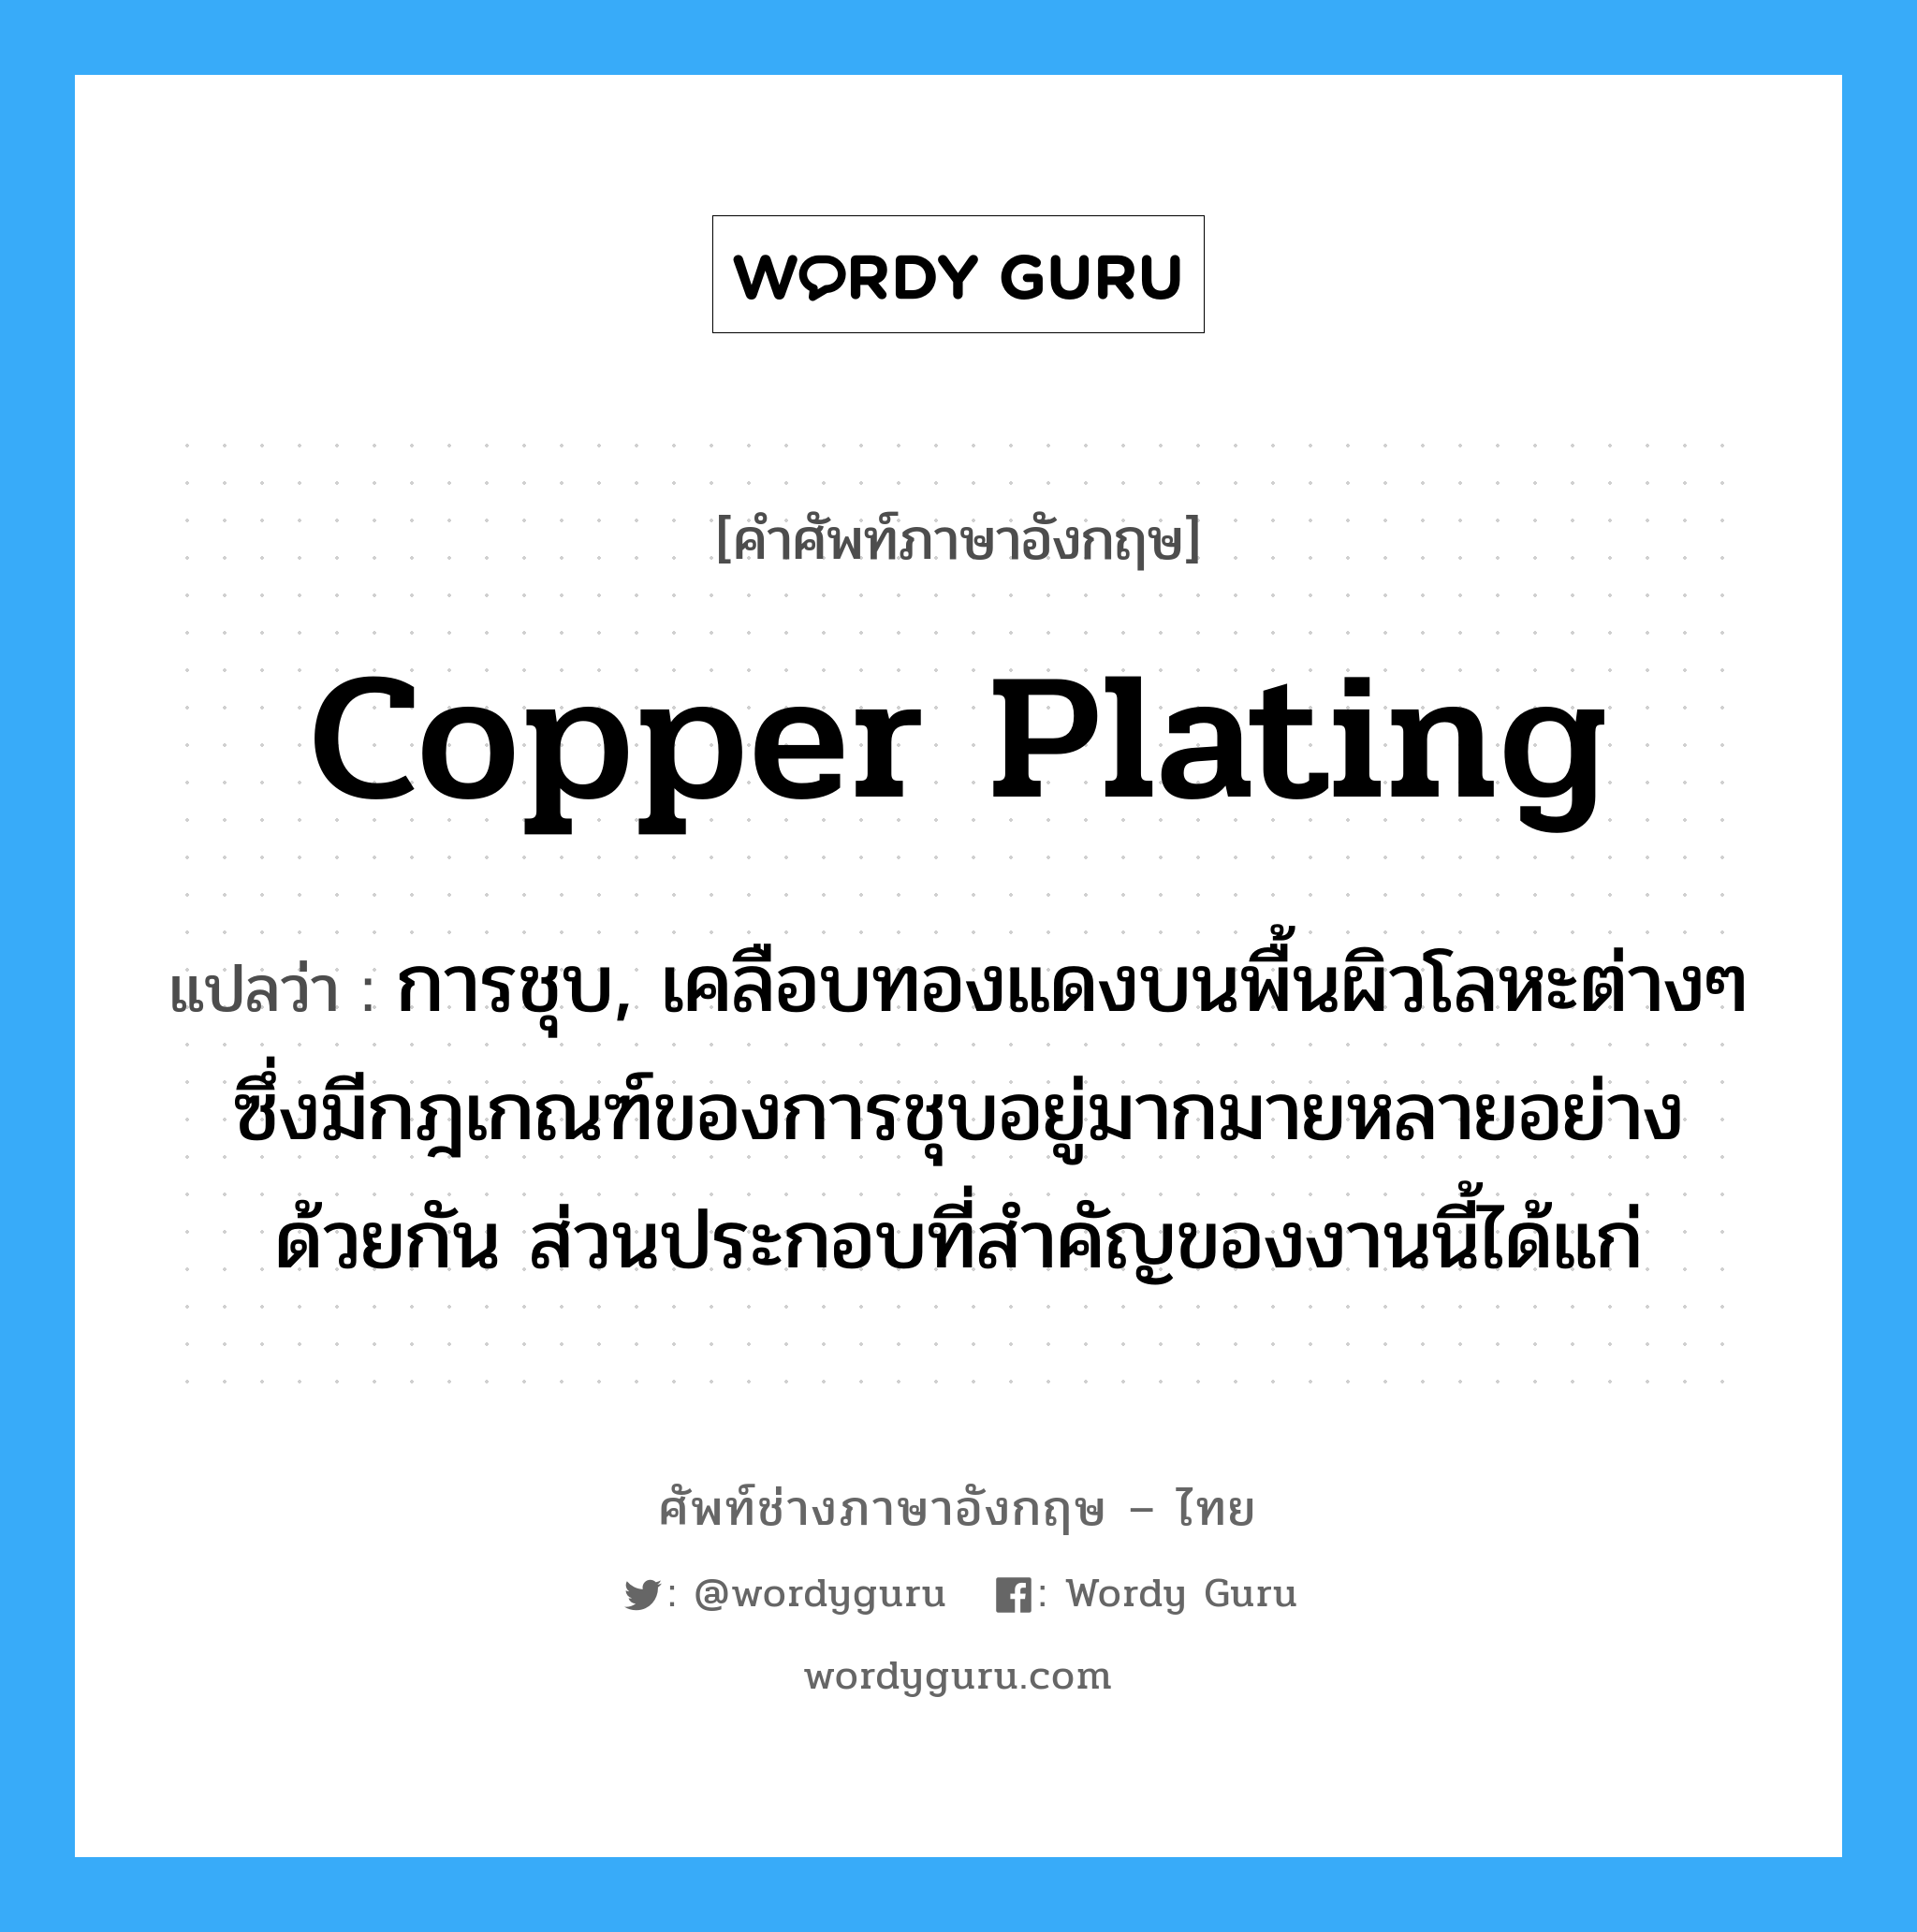 copper plating แปลว่า?, คำศัพท์ช่างภาษาอังกฤษ - ไทย copper plating คำศัพท์ภาษาอังกฤษ copper plating แปลว่า การชุบ, เคลือบทองแดงบนพื้นผิวโลหะต่างๆ ซึ่งมีกฎเกณฑ์ของการชุบอยู่มากมายหลายอย่างด้วยกัน ส่วนประกอบที่สำคัญของงานนี้ได้แก่